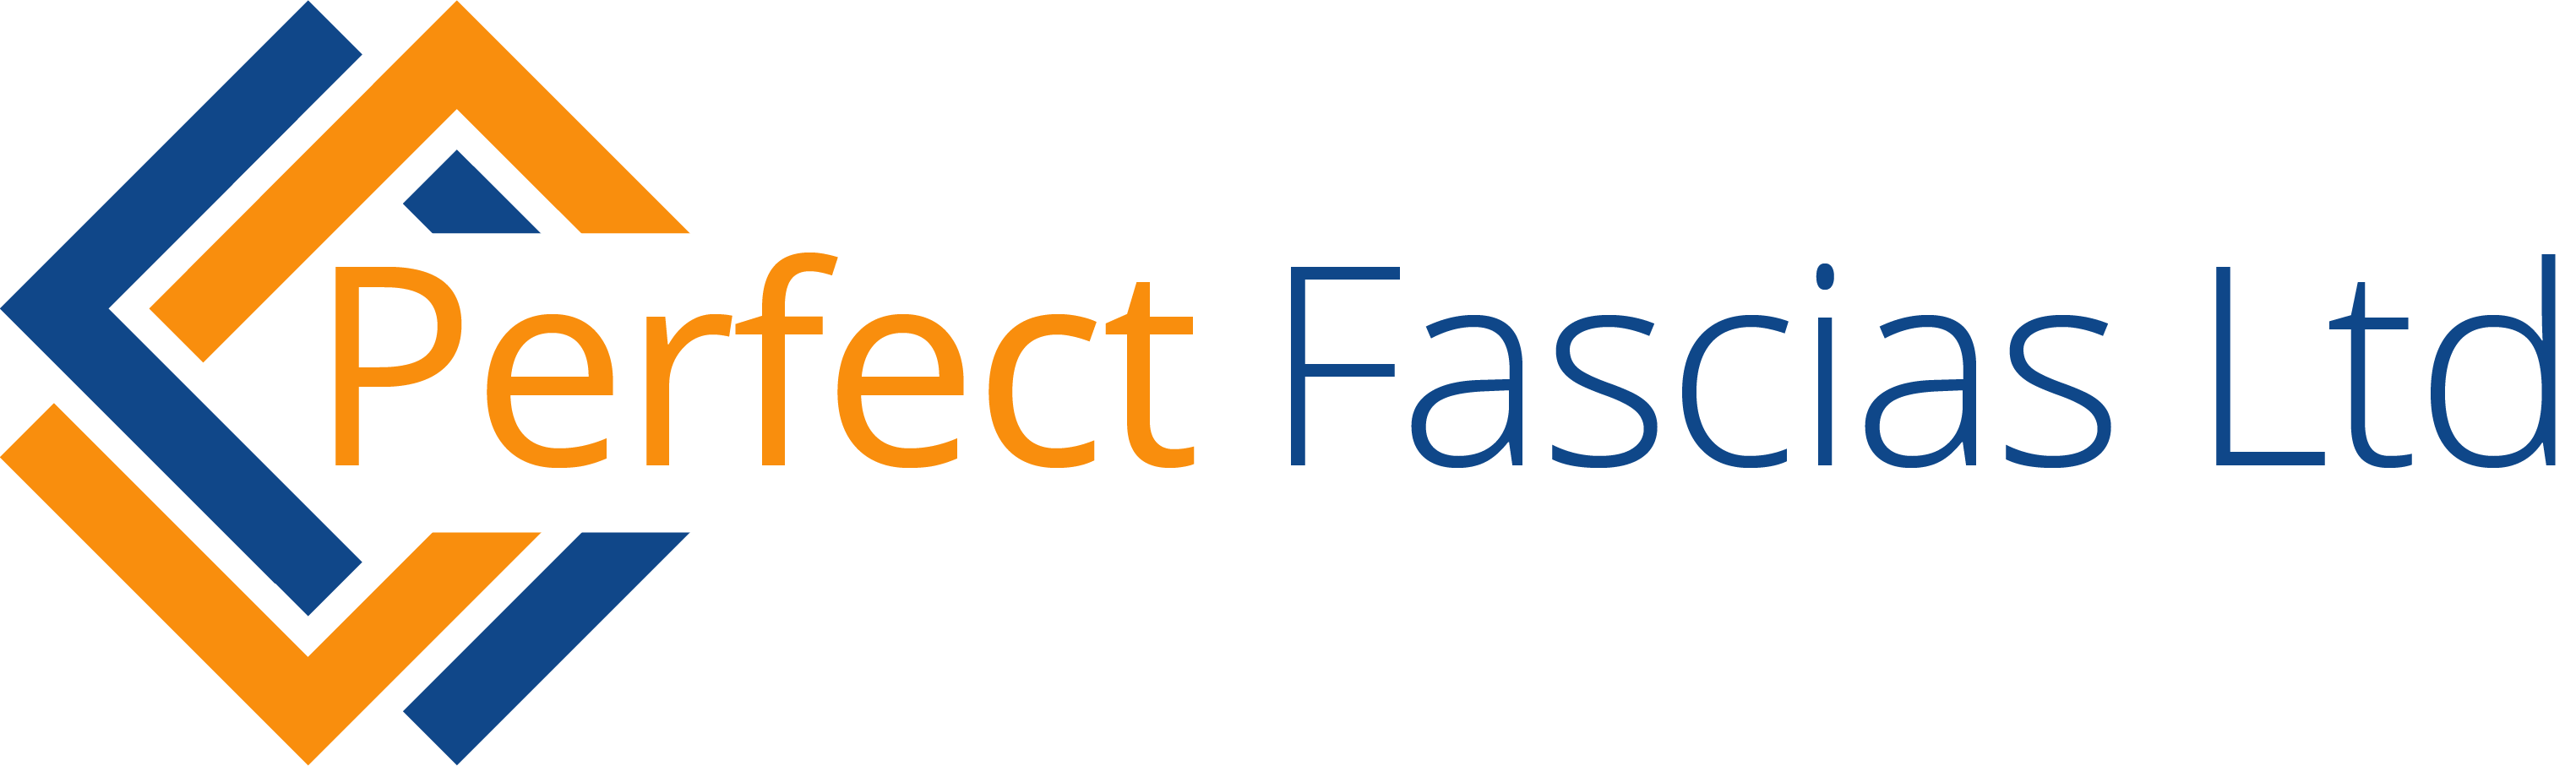 Perfect Fascias Ltd